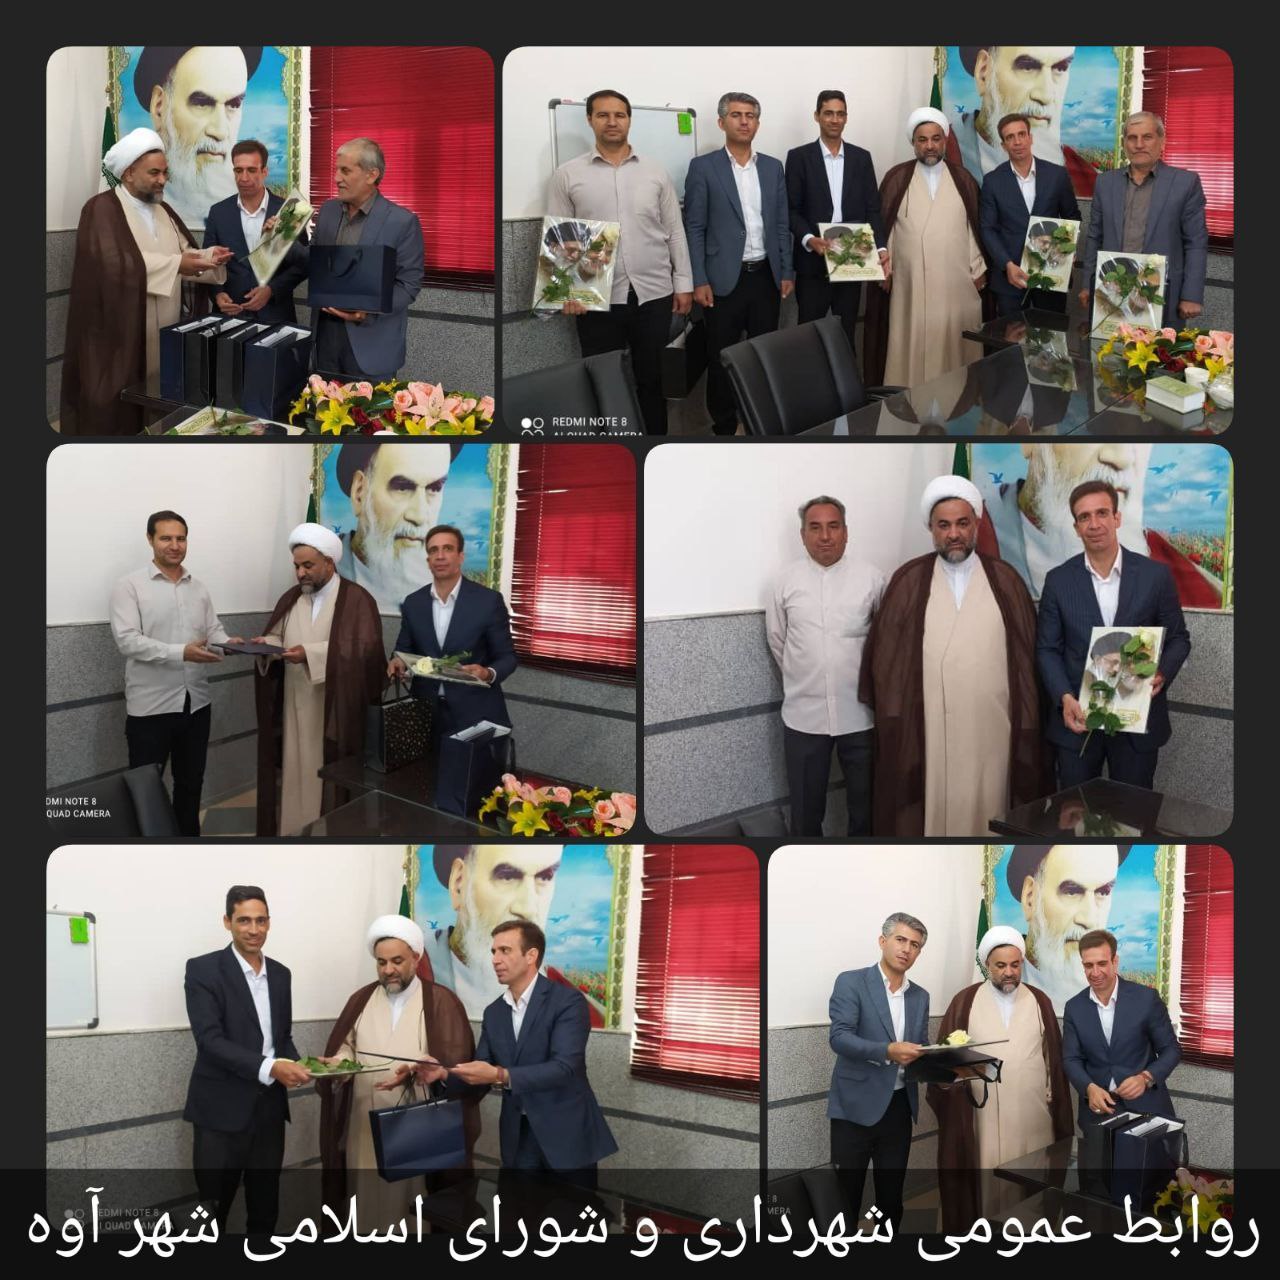 مراسم تجلیل و تقدیر از اعضای شورای اسلامی شهر آوه 